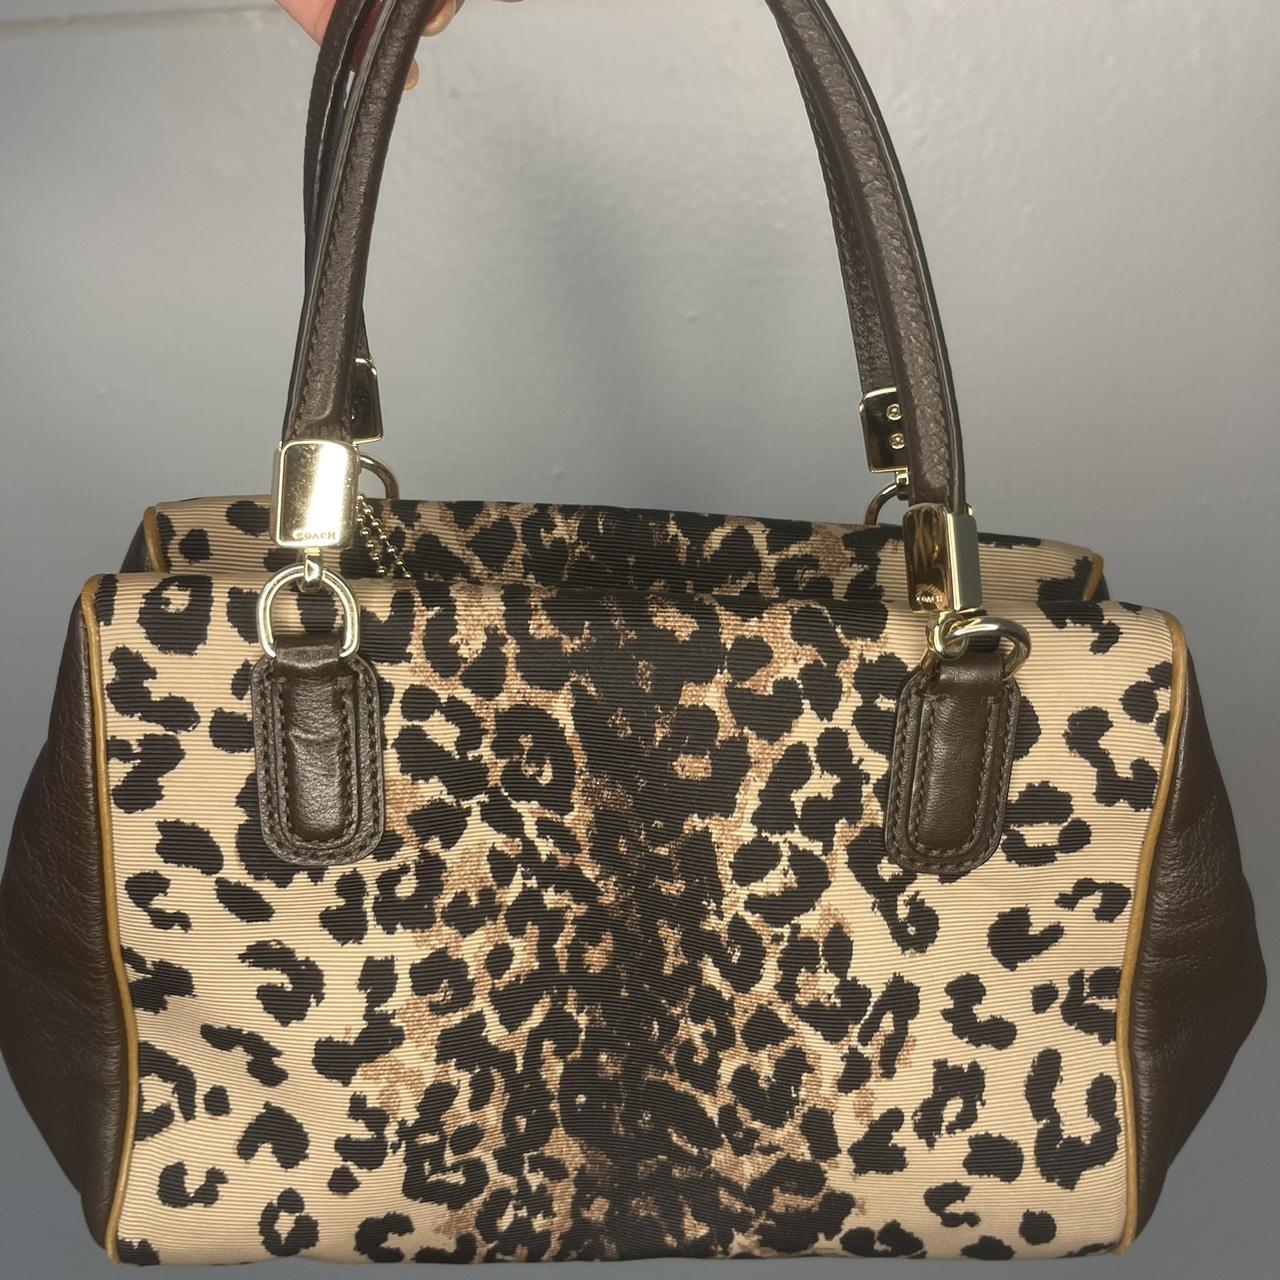 leopard-print: Handbags | Dillard's